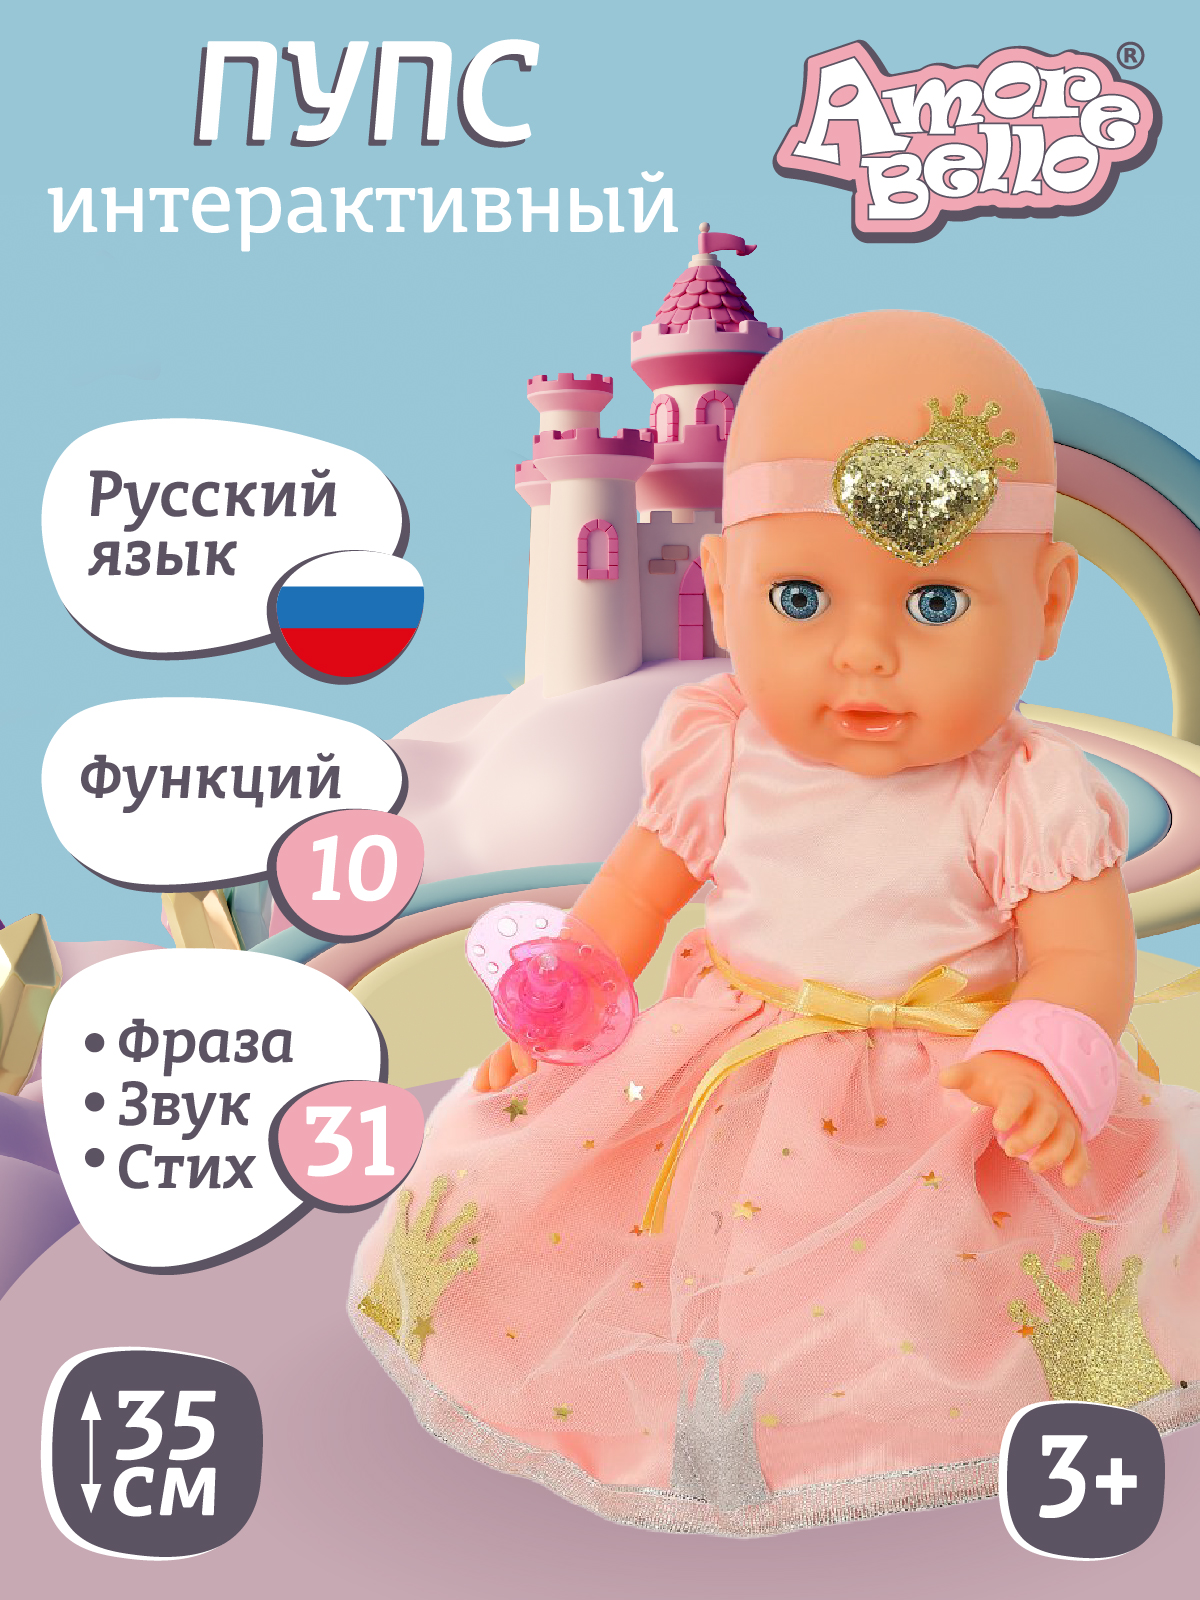 Кукла-Пупс Интерактивная Amore Bello с аксессуарами, плачет, смеется, говорит, JB0211589